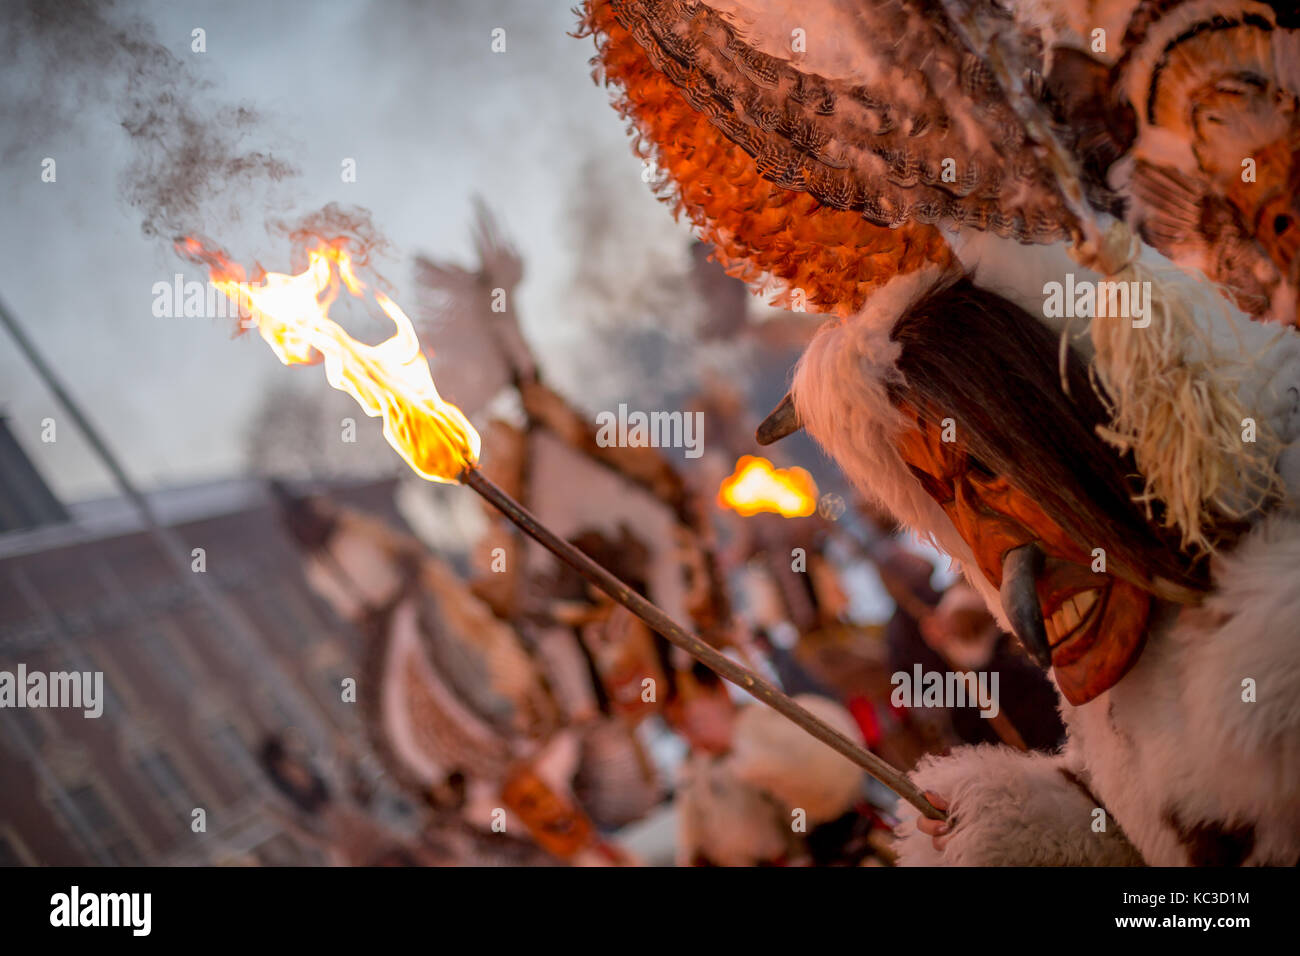 Pernik, Bulgarien - Januar 27, 2017: Maskierte männliche Teilnehmer in Scary Fell Kostüm und Maske ist die brennende Fackel an surva, der Internationalen Stockfoto